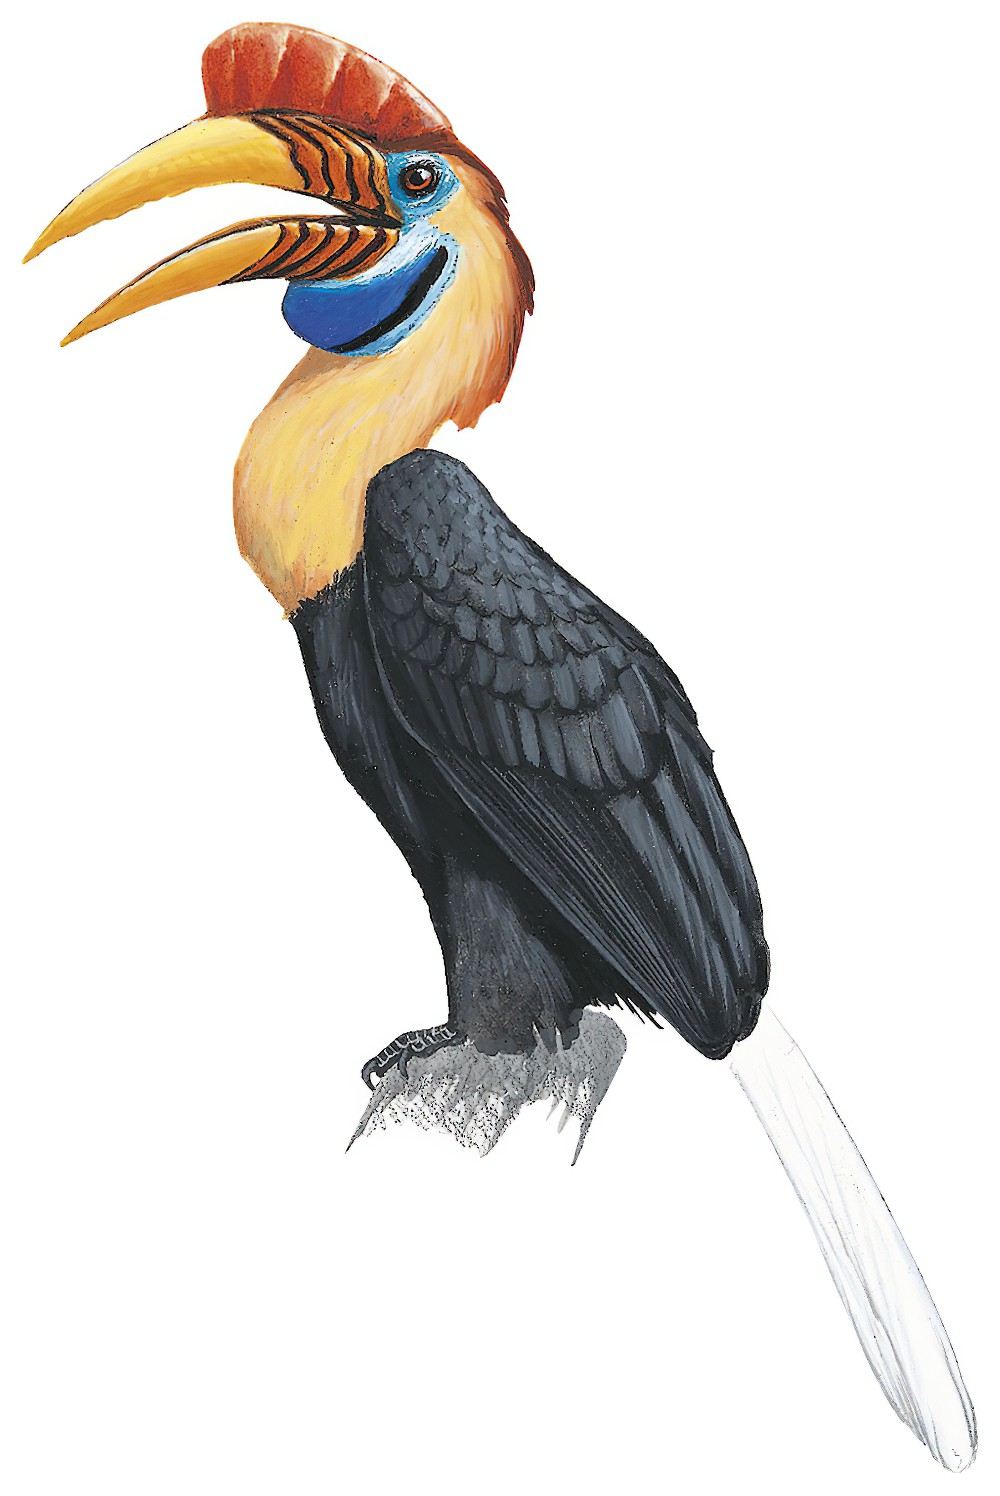 Knobbed Hornbill / Rhyticeros cassidix